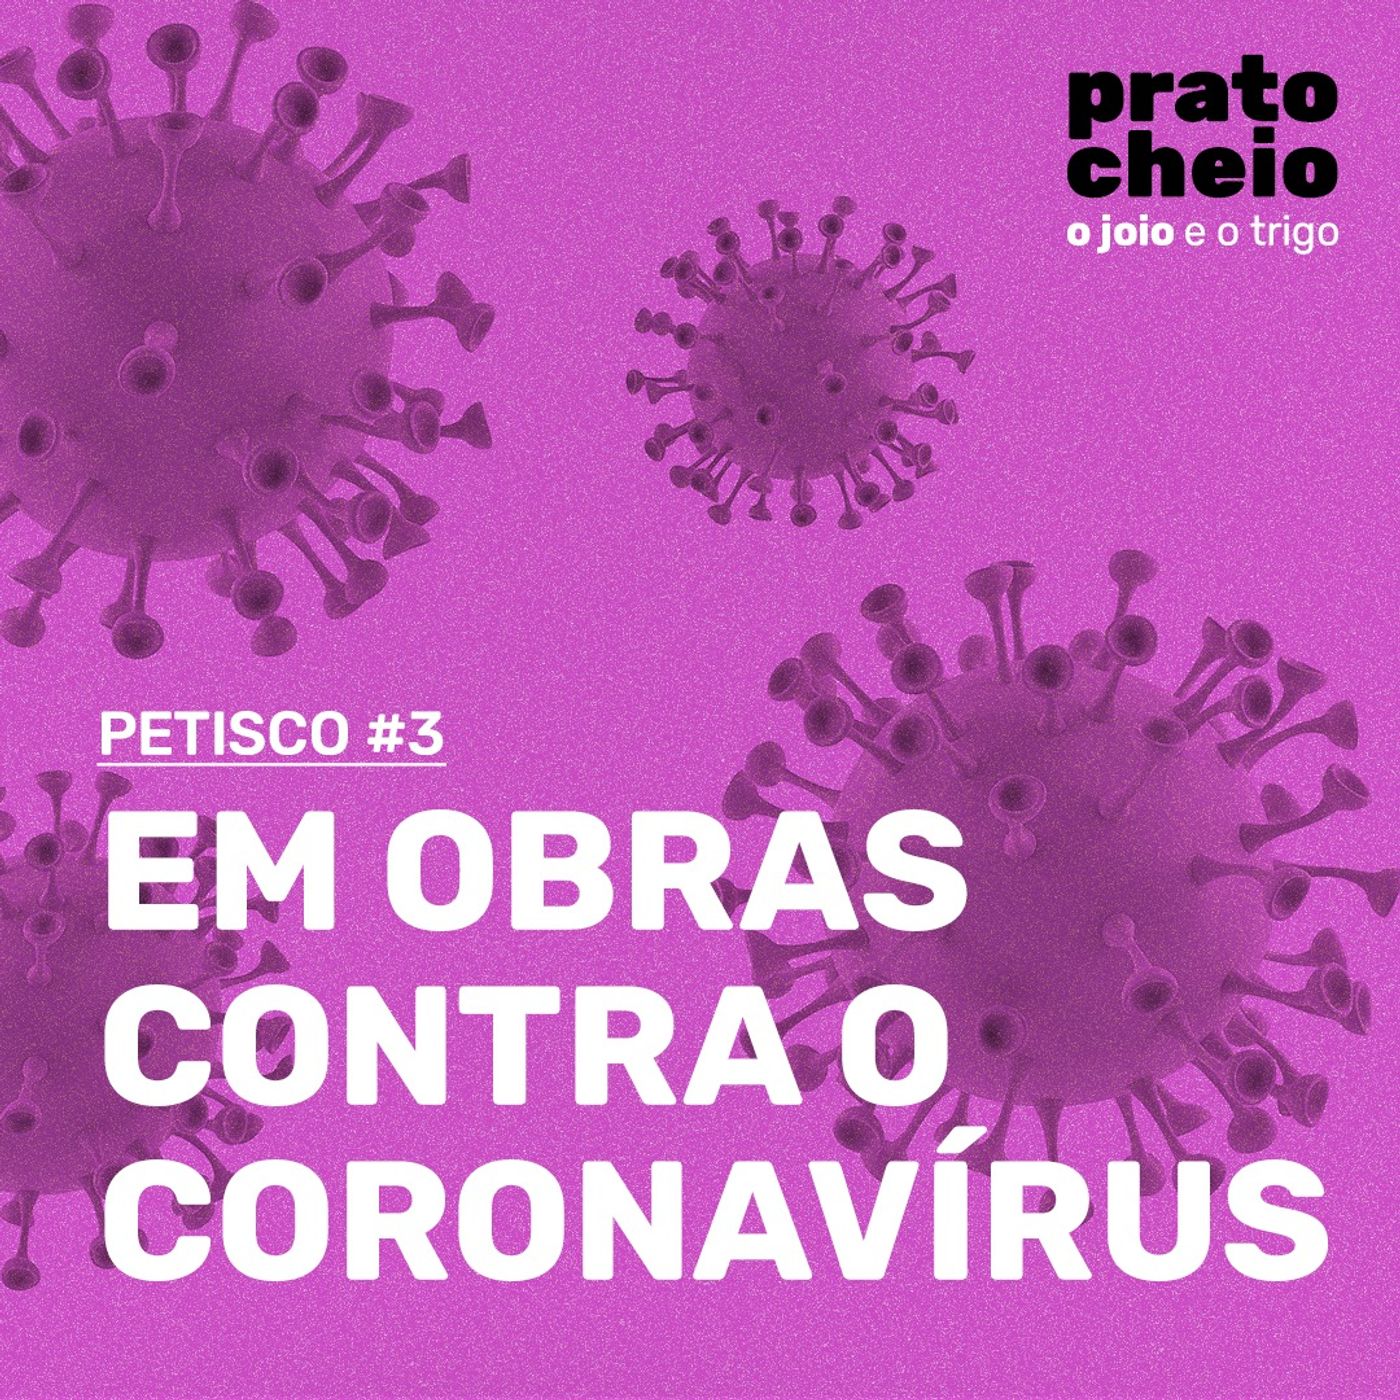 Petisco #3 – Em obras contra o coronavírus